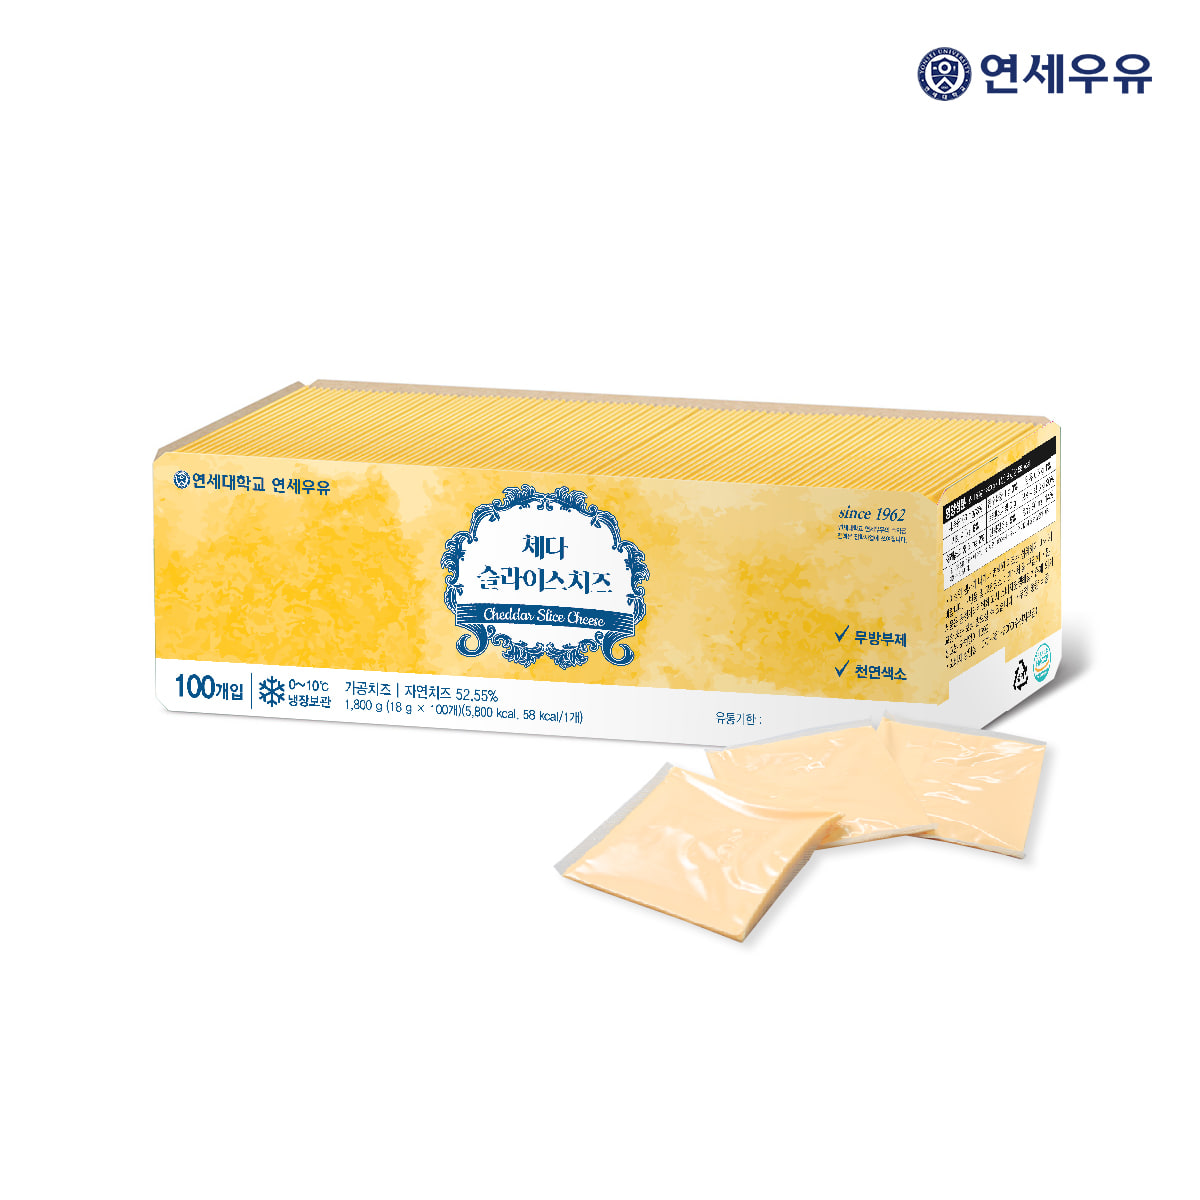 연세우유 체다 슬라이스 치즈 1800g (100매) - 델리스